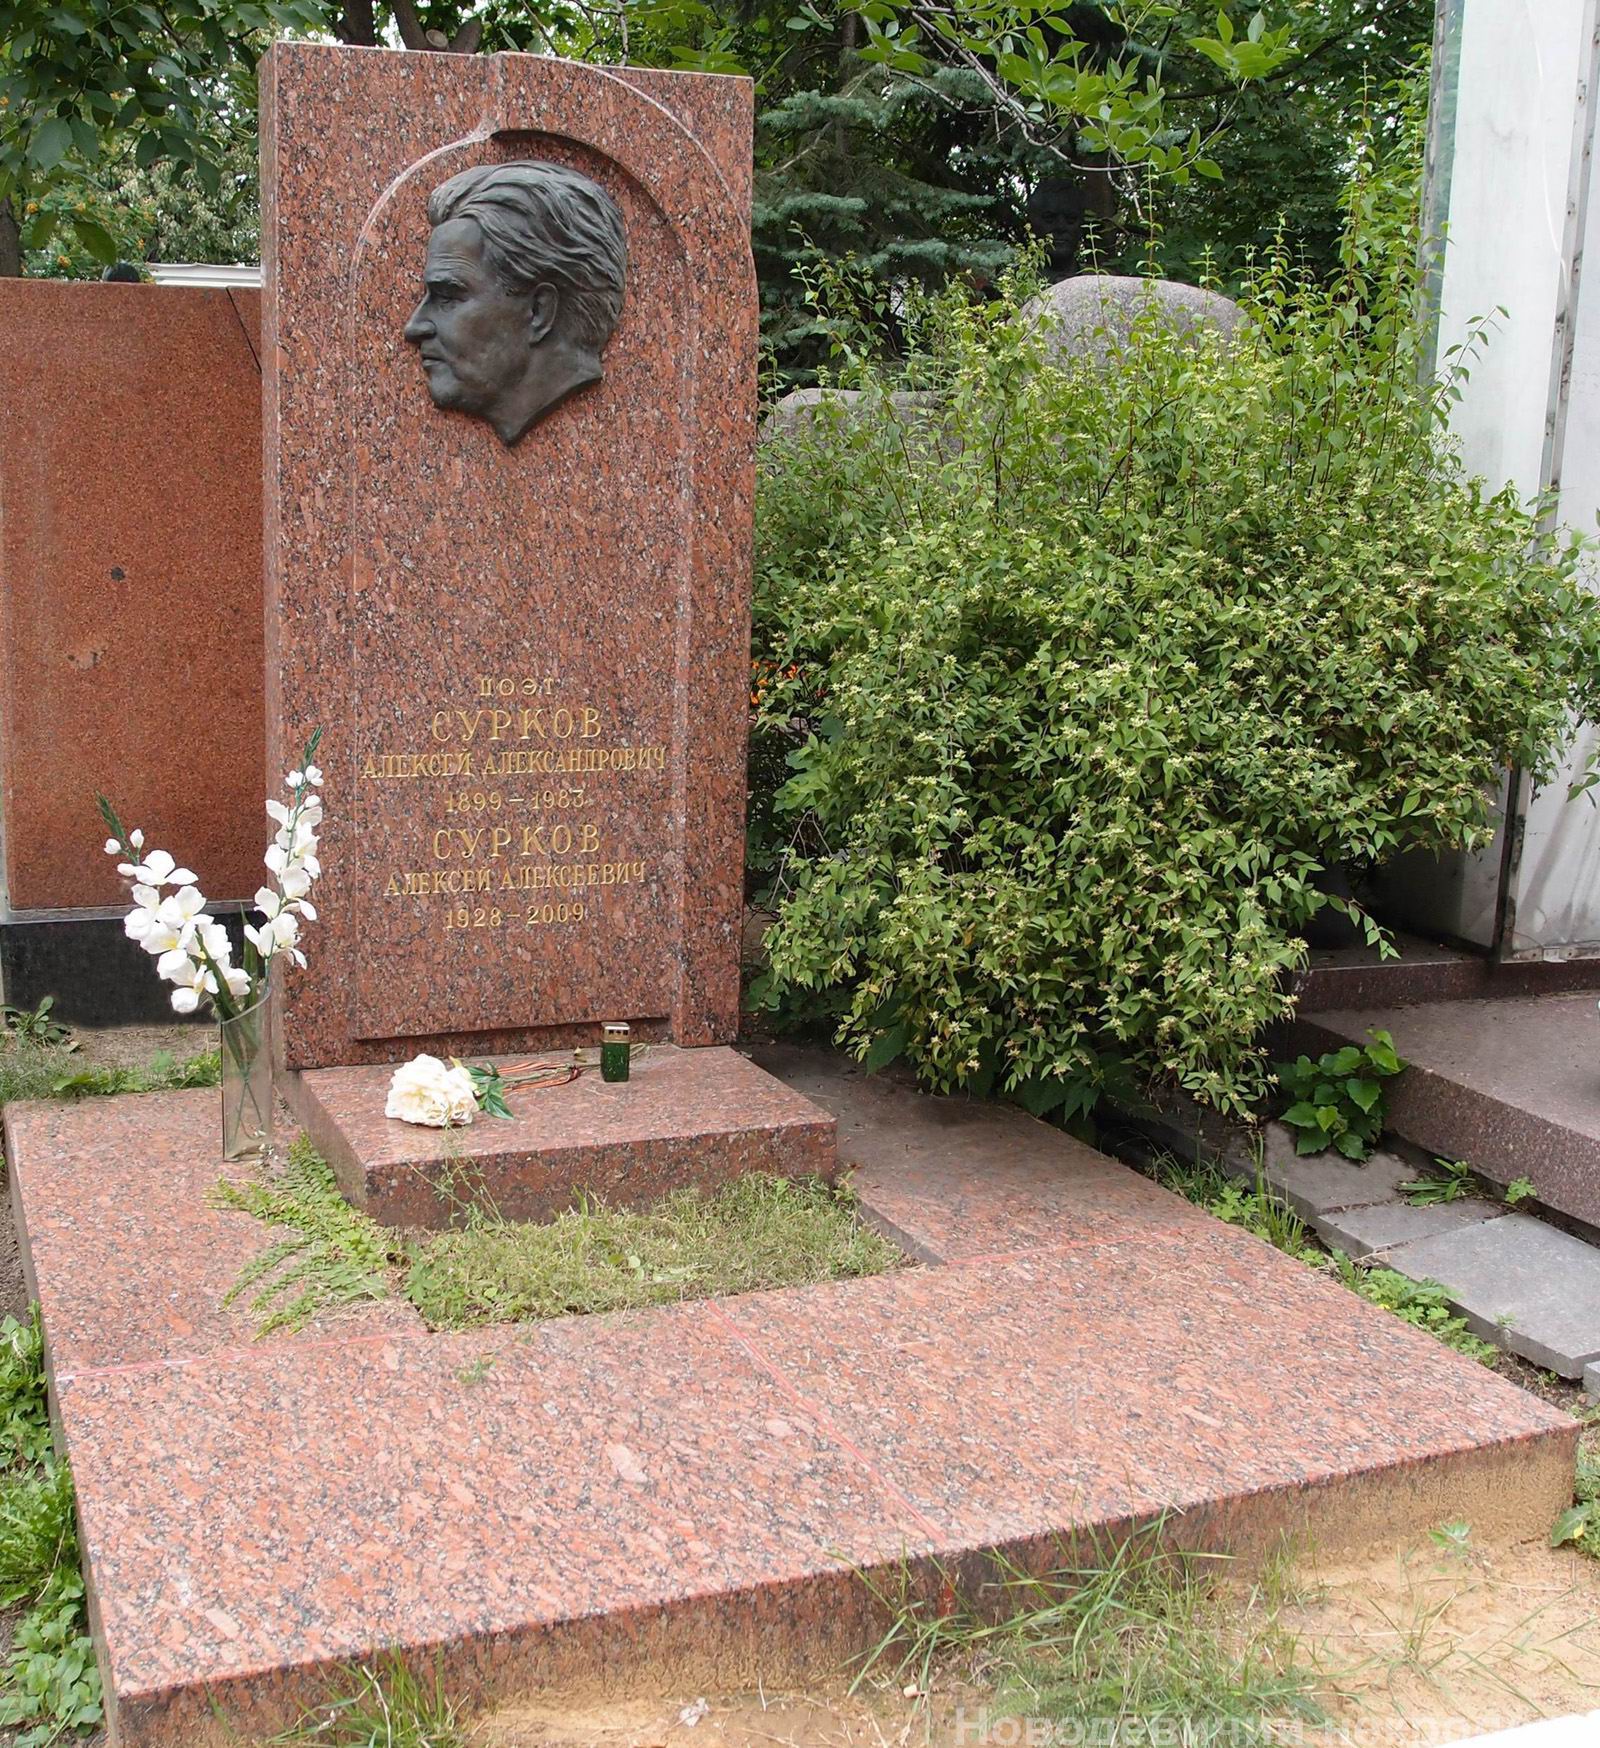 Памятник на могиле Суркова А.А. (1899-1983), ск. П.Шапиро, арх. А.Гераскин, на Новодевичьем кладбище (10-1-15).